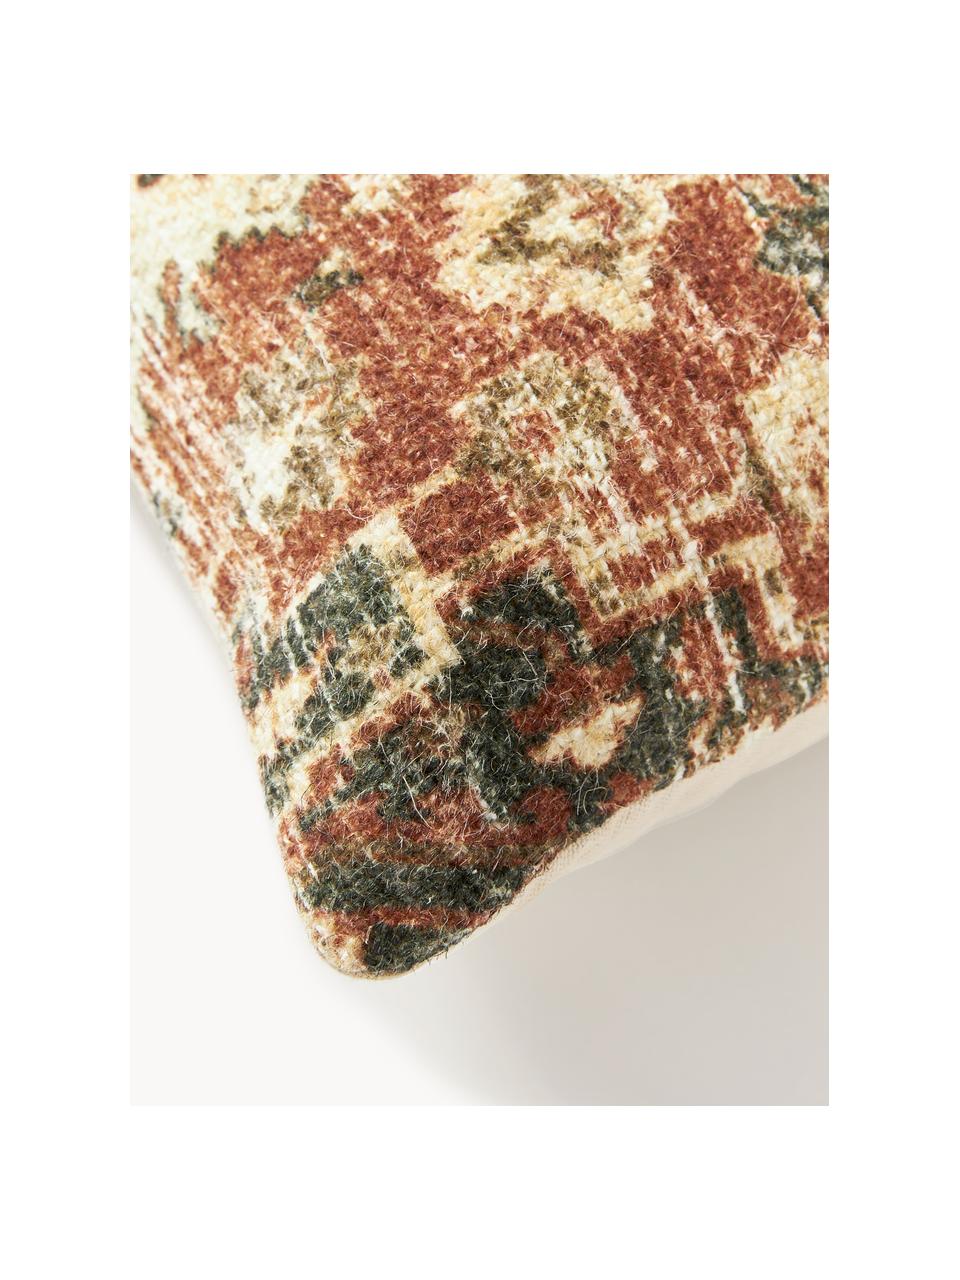 Cuscino in iuta Nario, Retro: 100% cotone, Rosso ruggine, multicolore, Larg. 30 x Lung. 70 cm